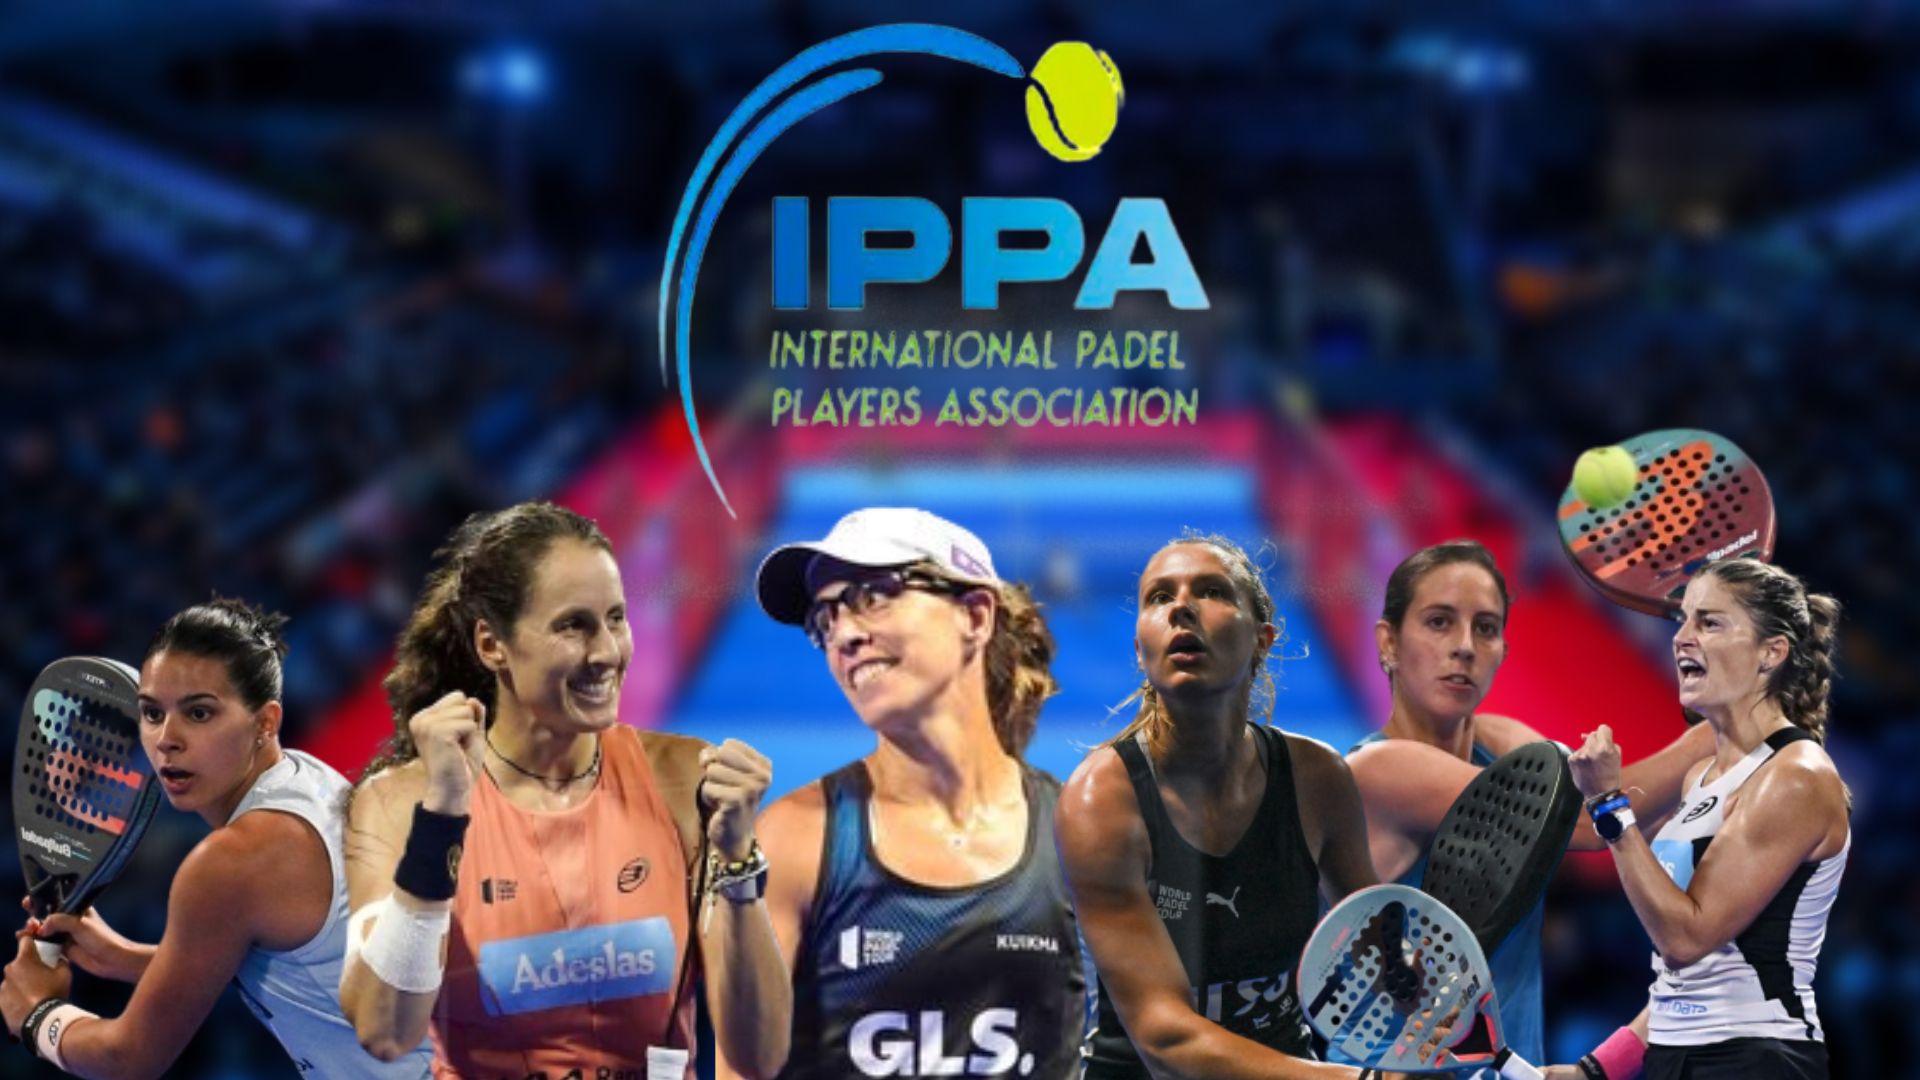 IPPA internazionale Padel Associazione delle ragazze giocatrici